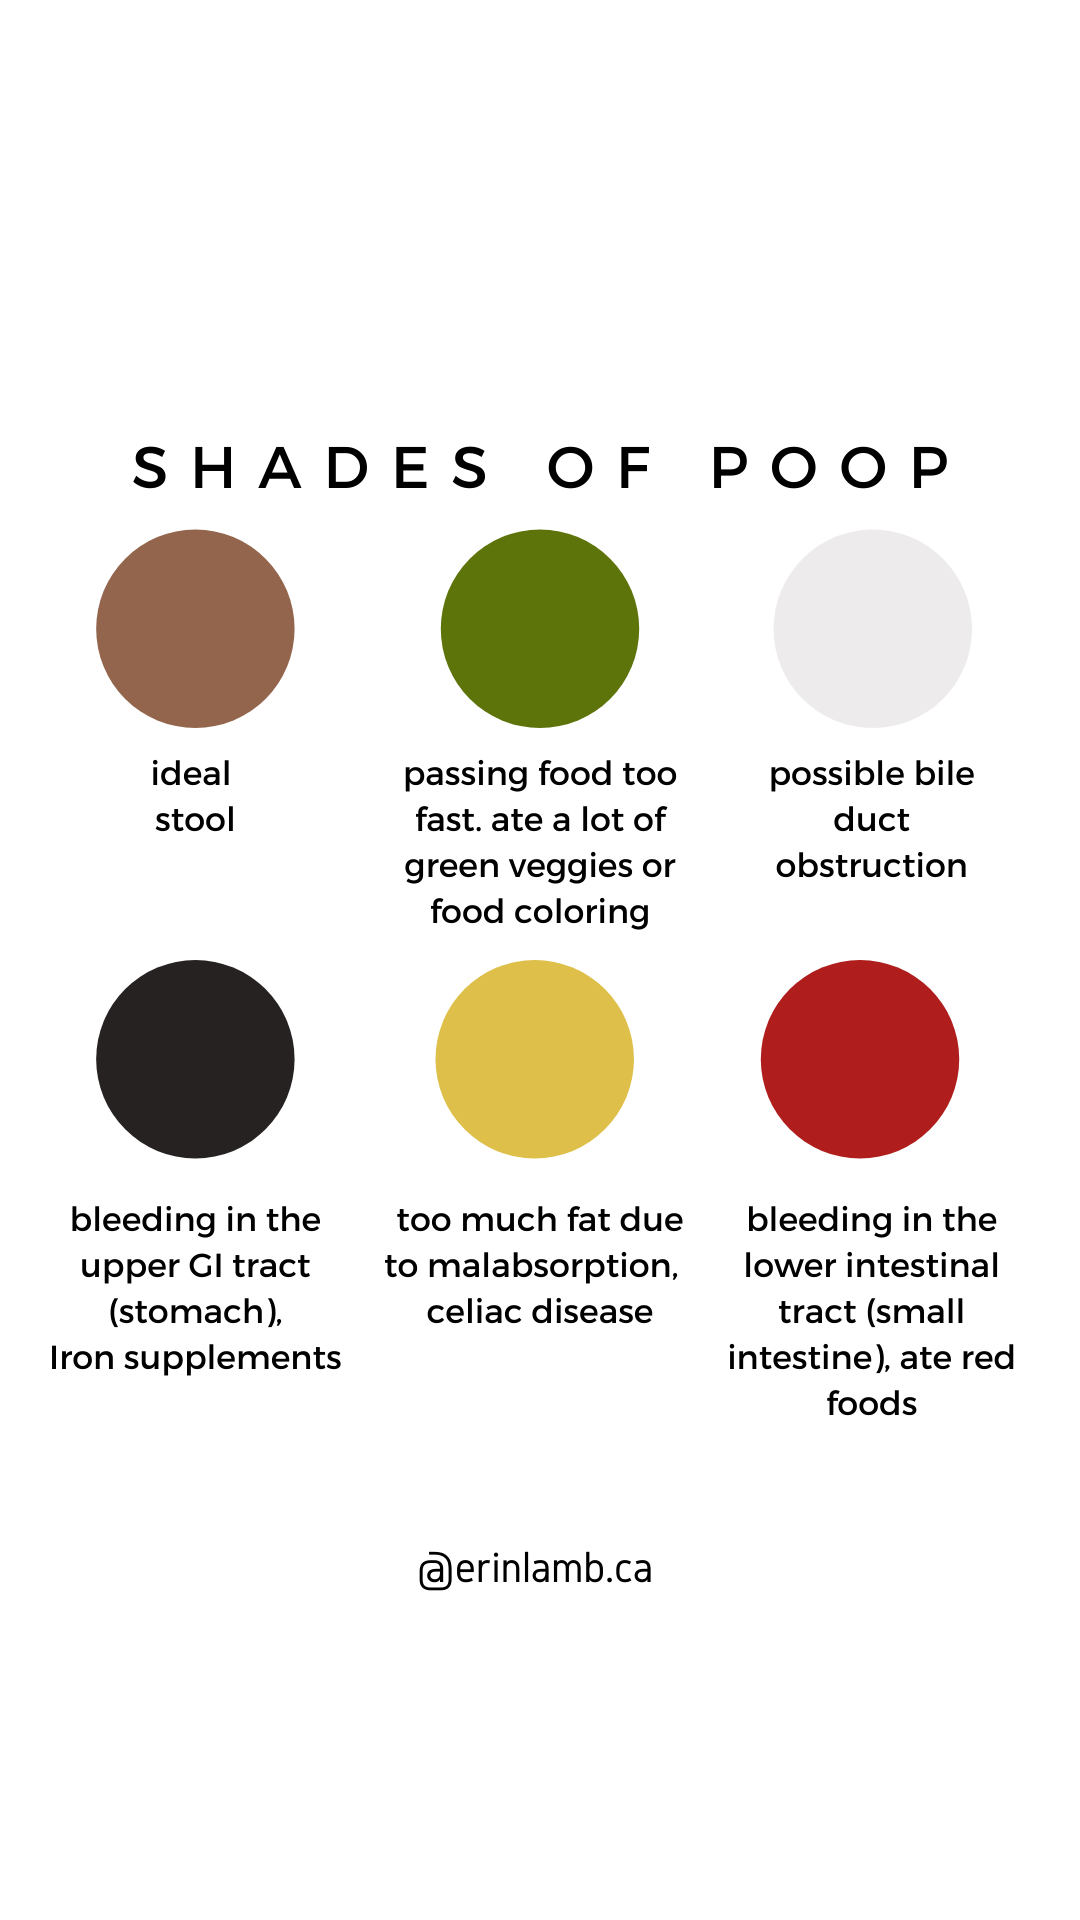 Shades of Poop